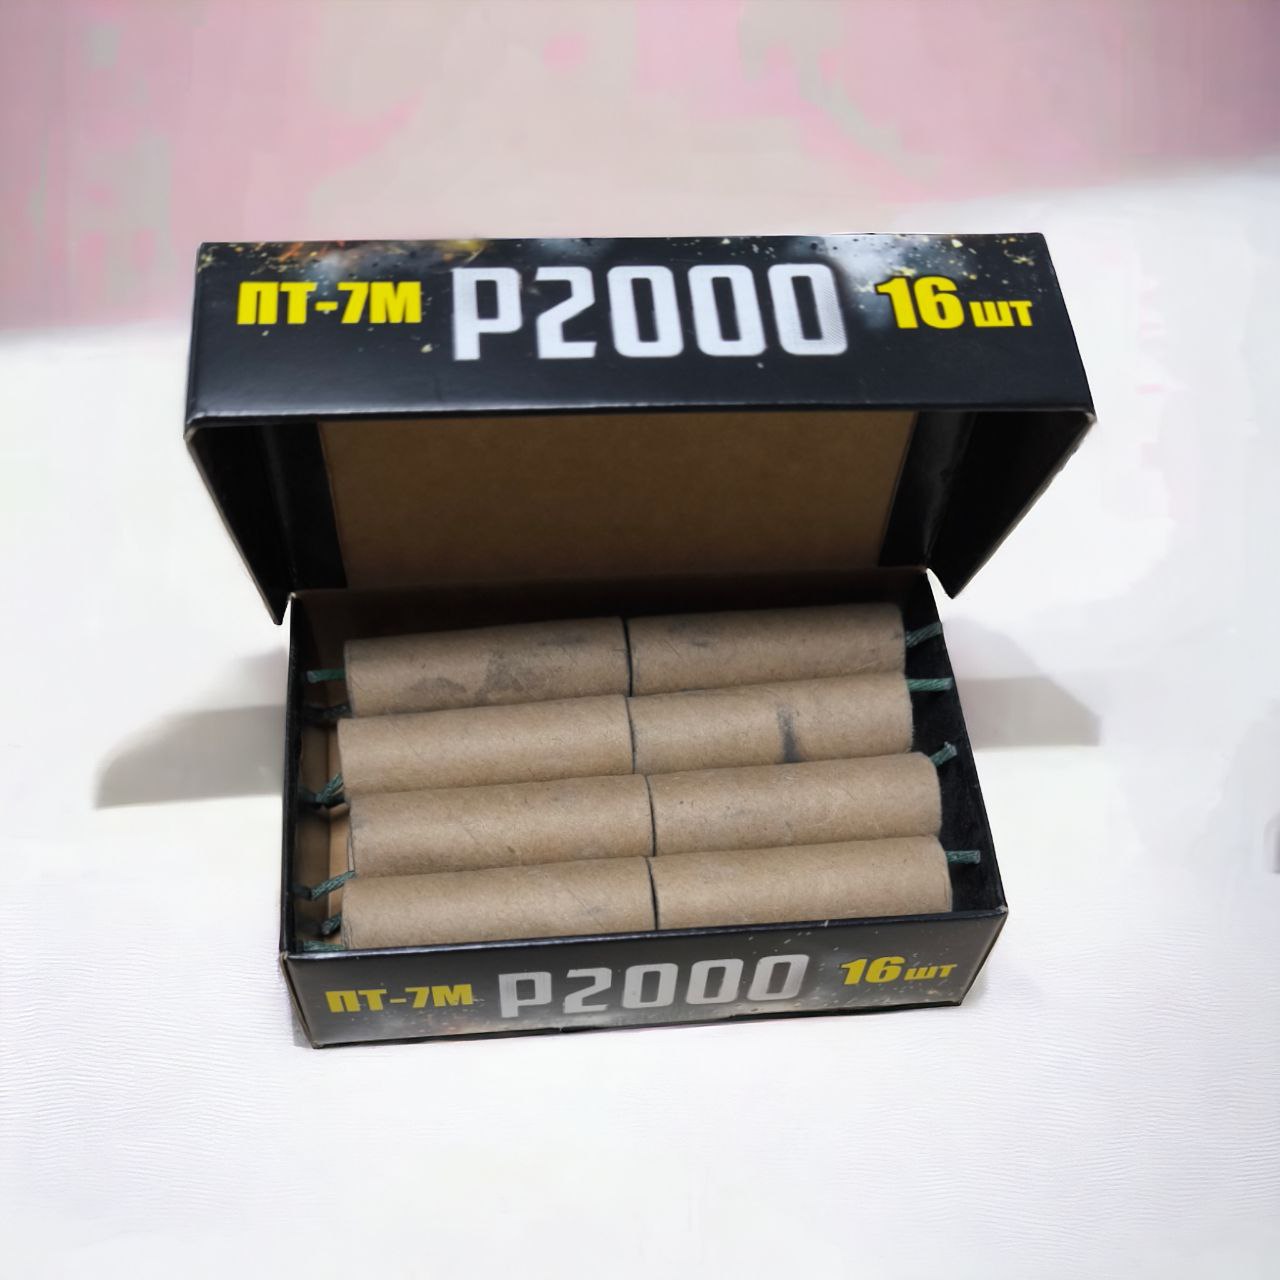 P2000 (ПТ-7М) Петарда p2000 16 шт потужна (1.5 грм Flash) Упаковка петард (16 шт/уп)